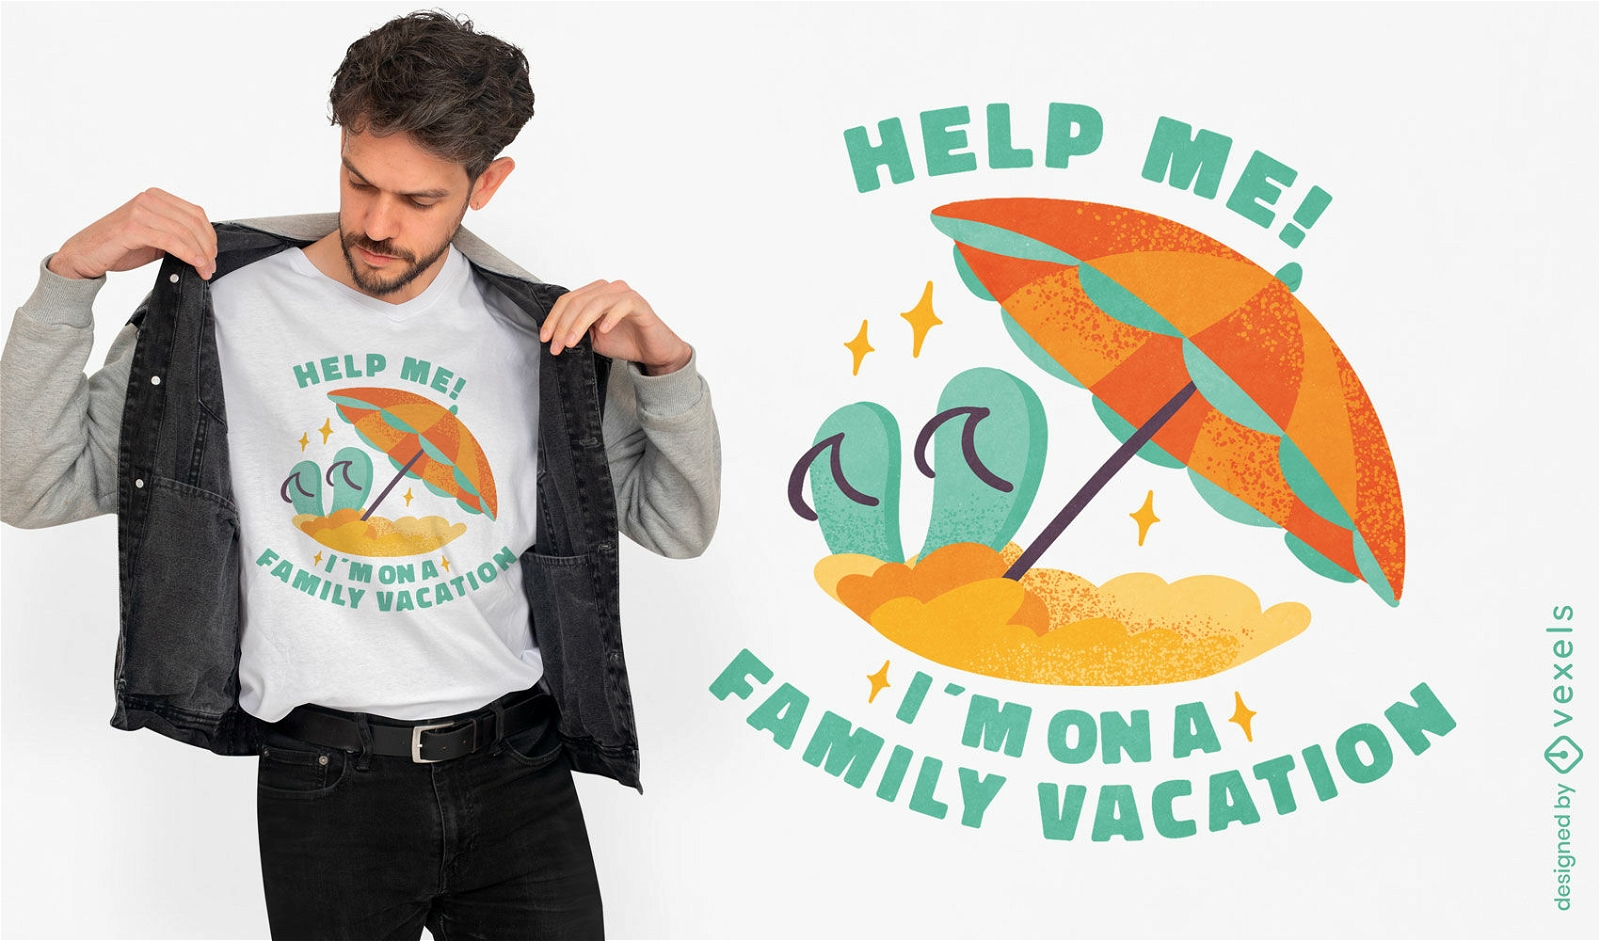 Dise?o de camiseta de vacaciones familiares en la playa.